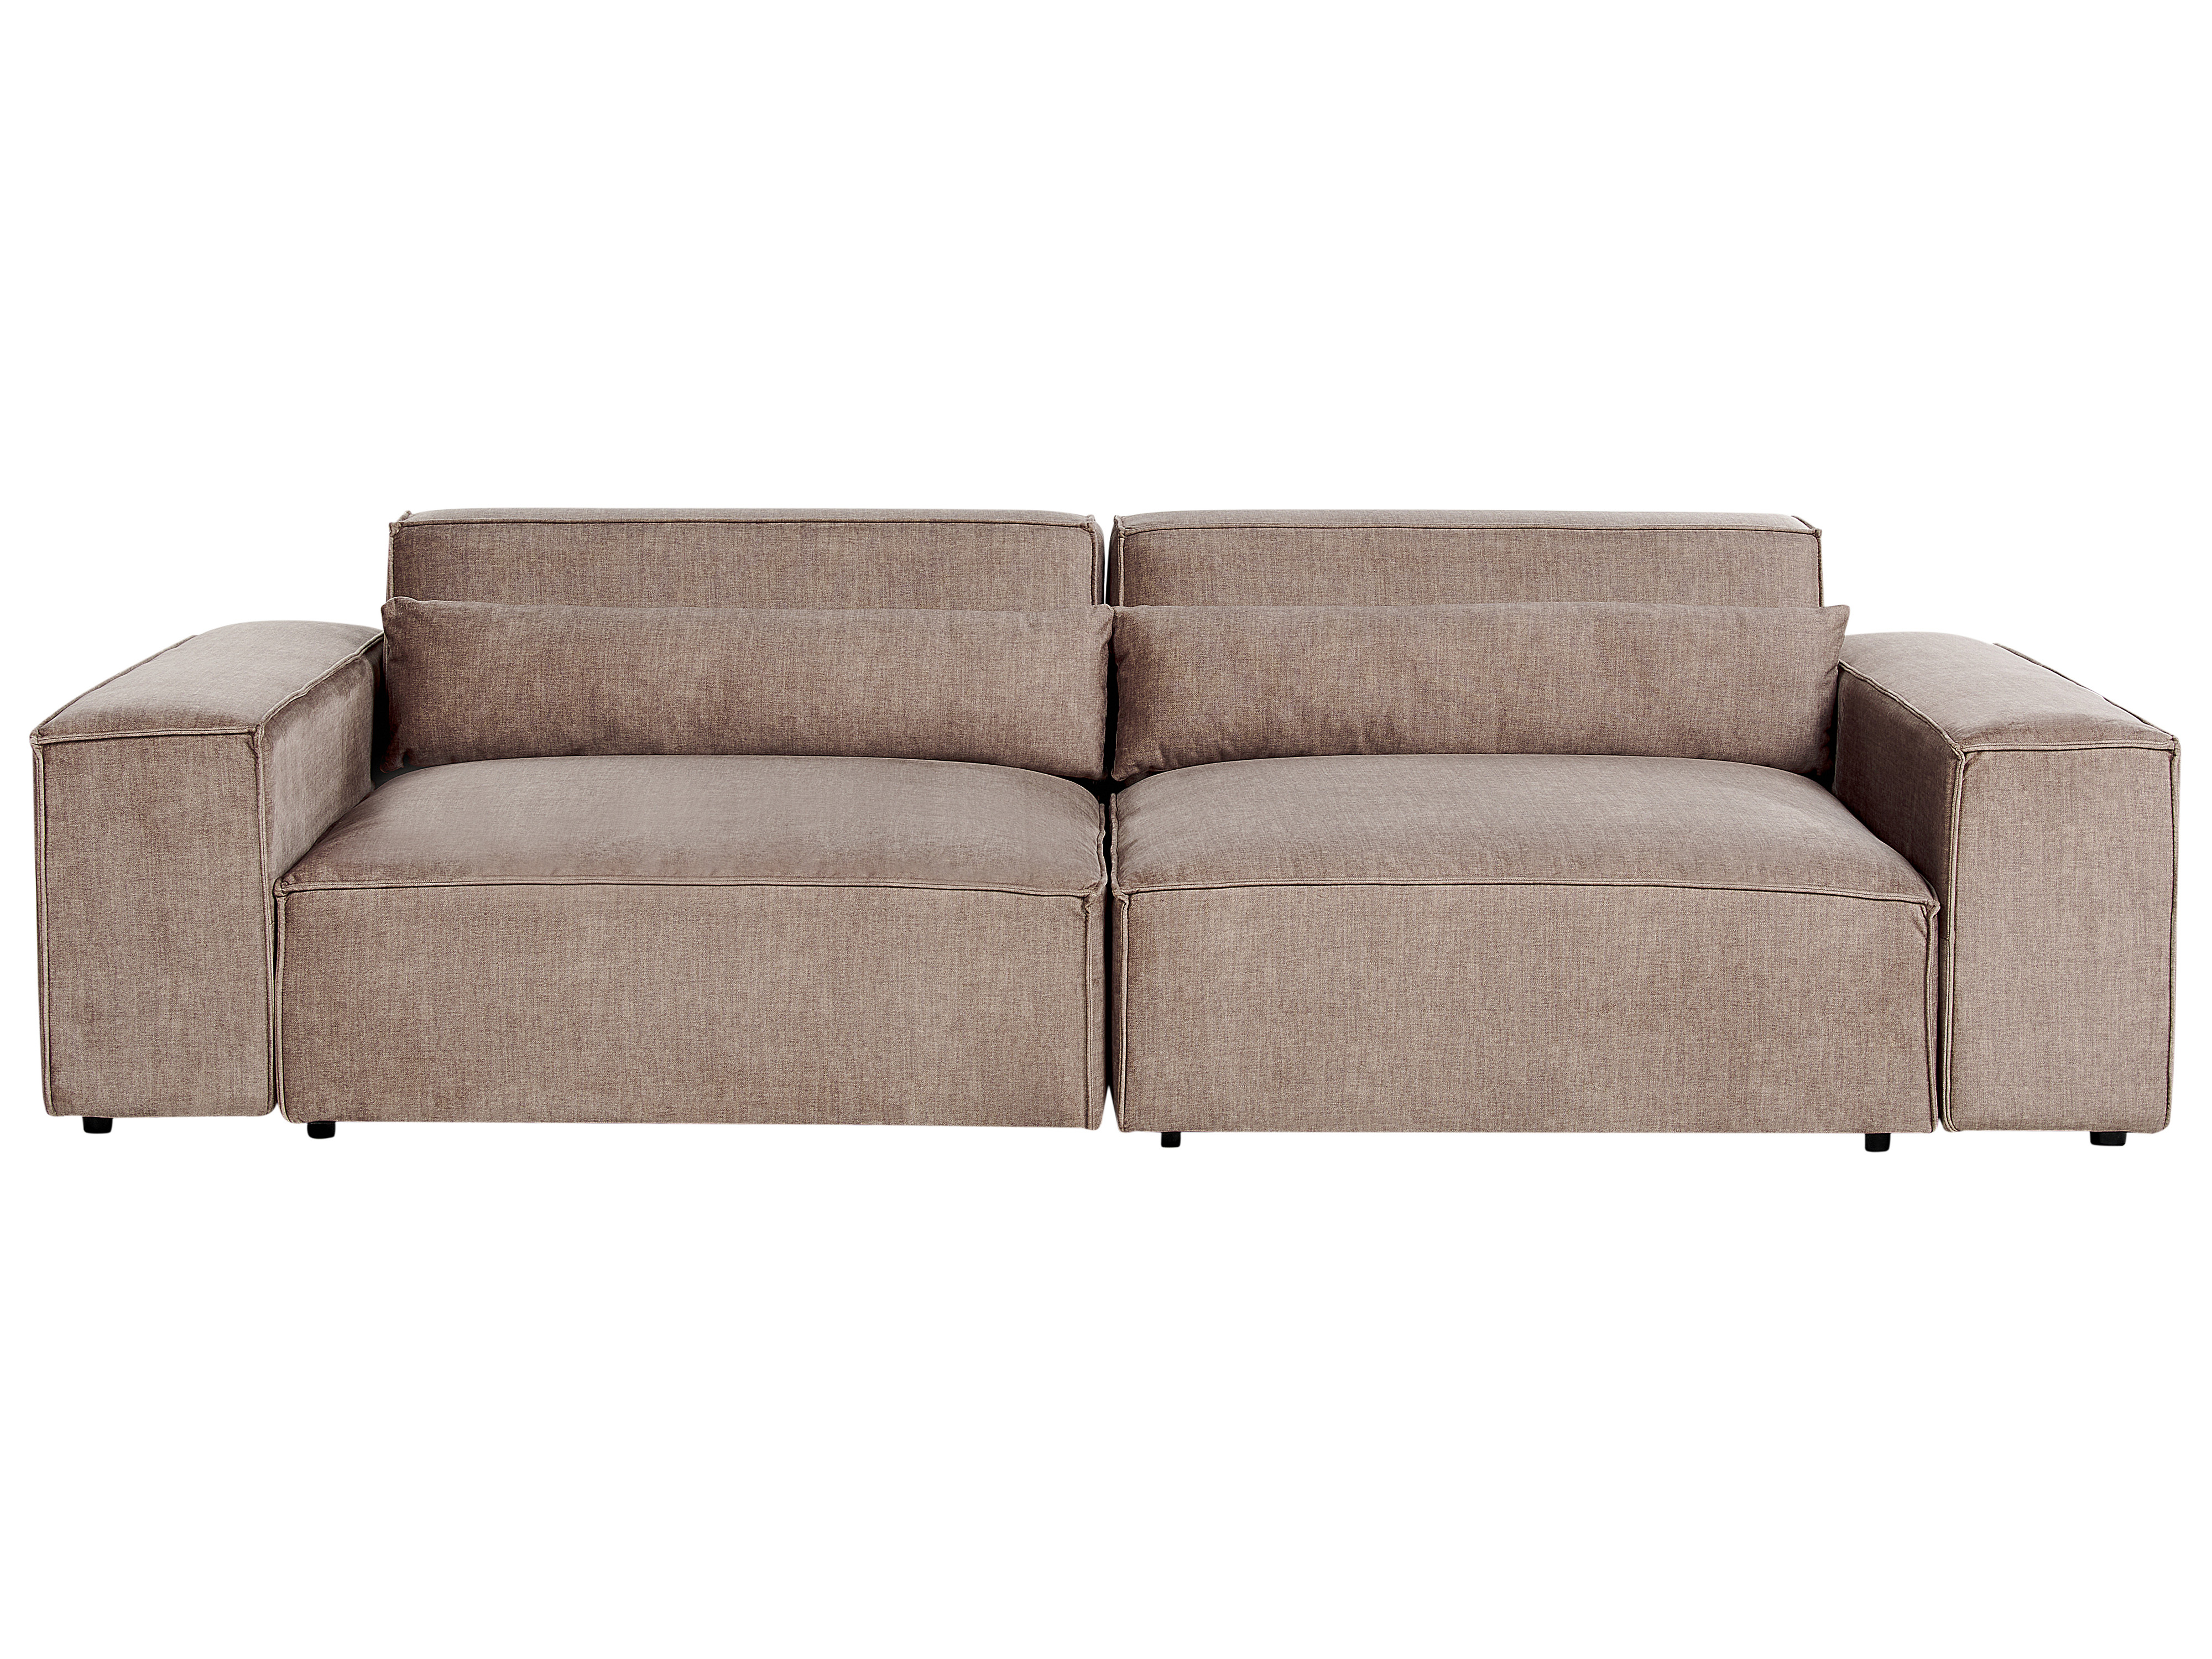 2 Seater Modular Fabric Sofa with Ottoman Brown HELLNAR_912253